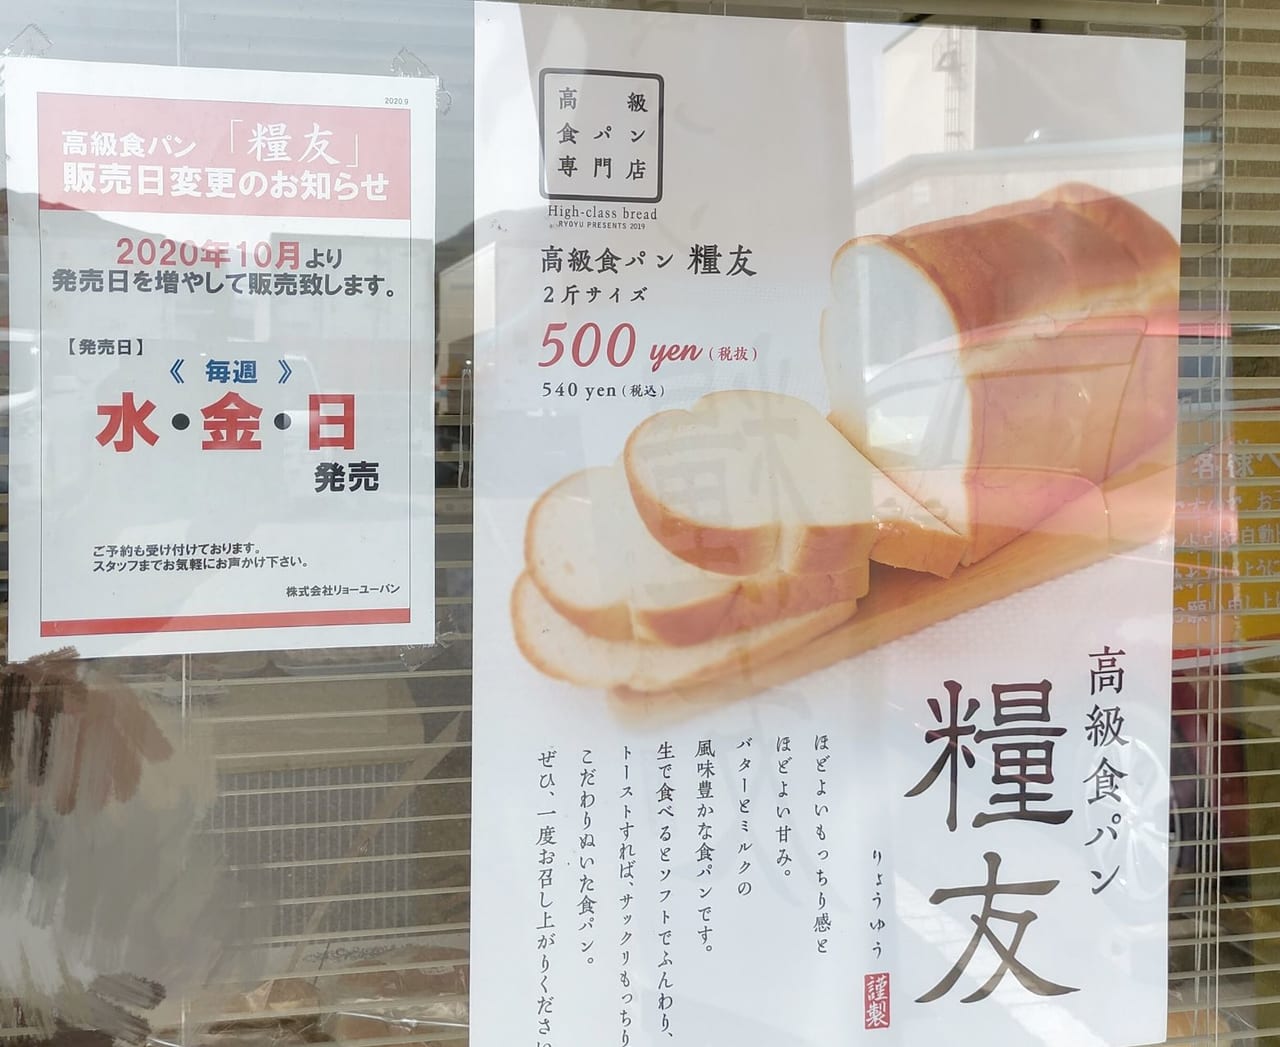 高級食パン「糧友」のポスター